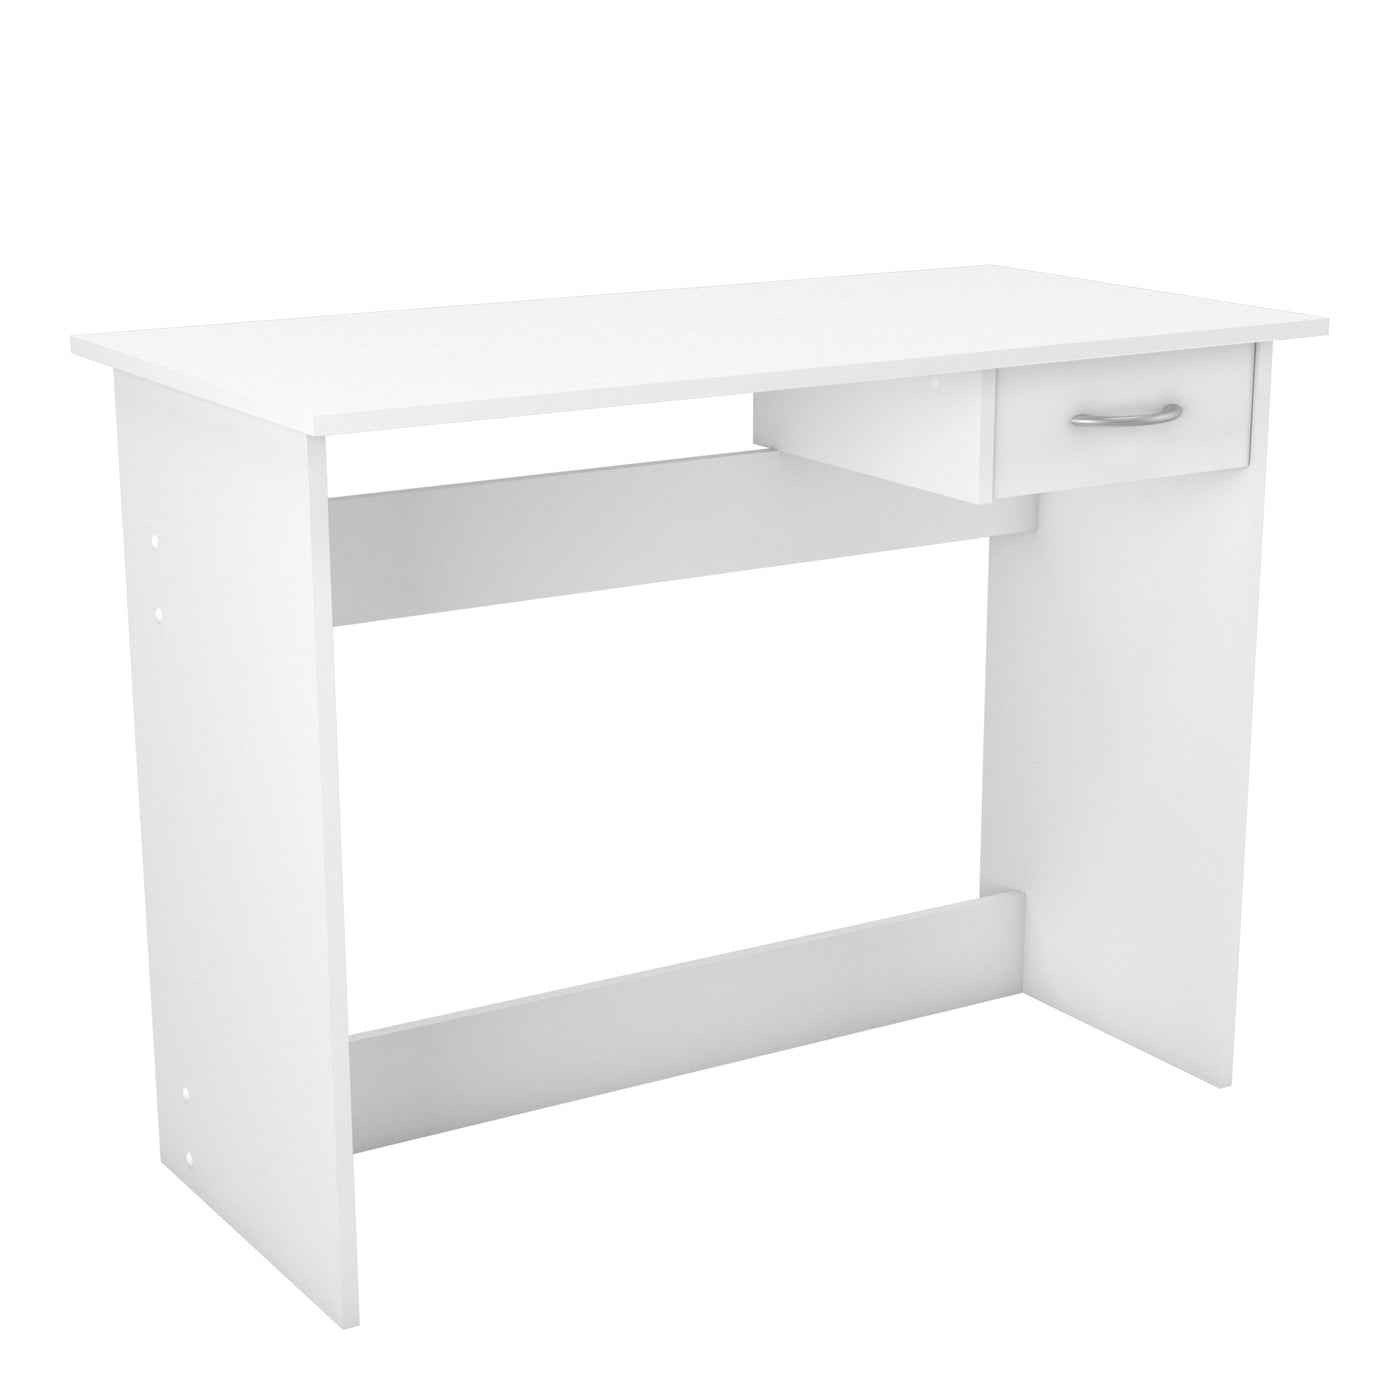 Wit bureau met enkele lade, ideaal voor een thuiswerkplek of studeerkamer. Eenvoudig en functioneel ontwerp geschikt voor werk of studie.